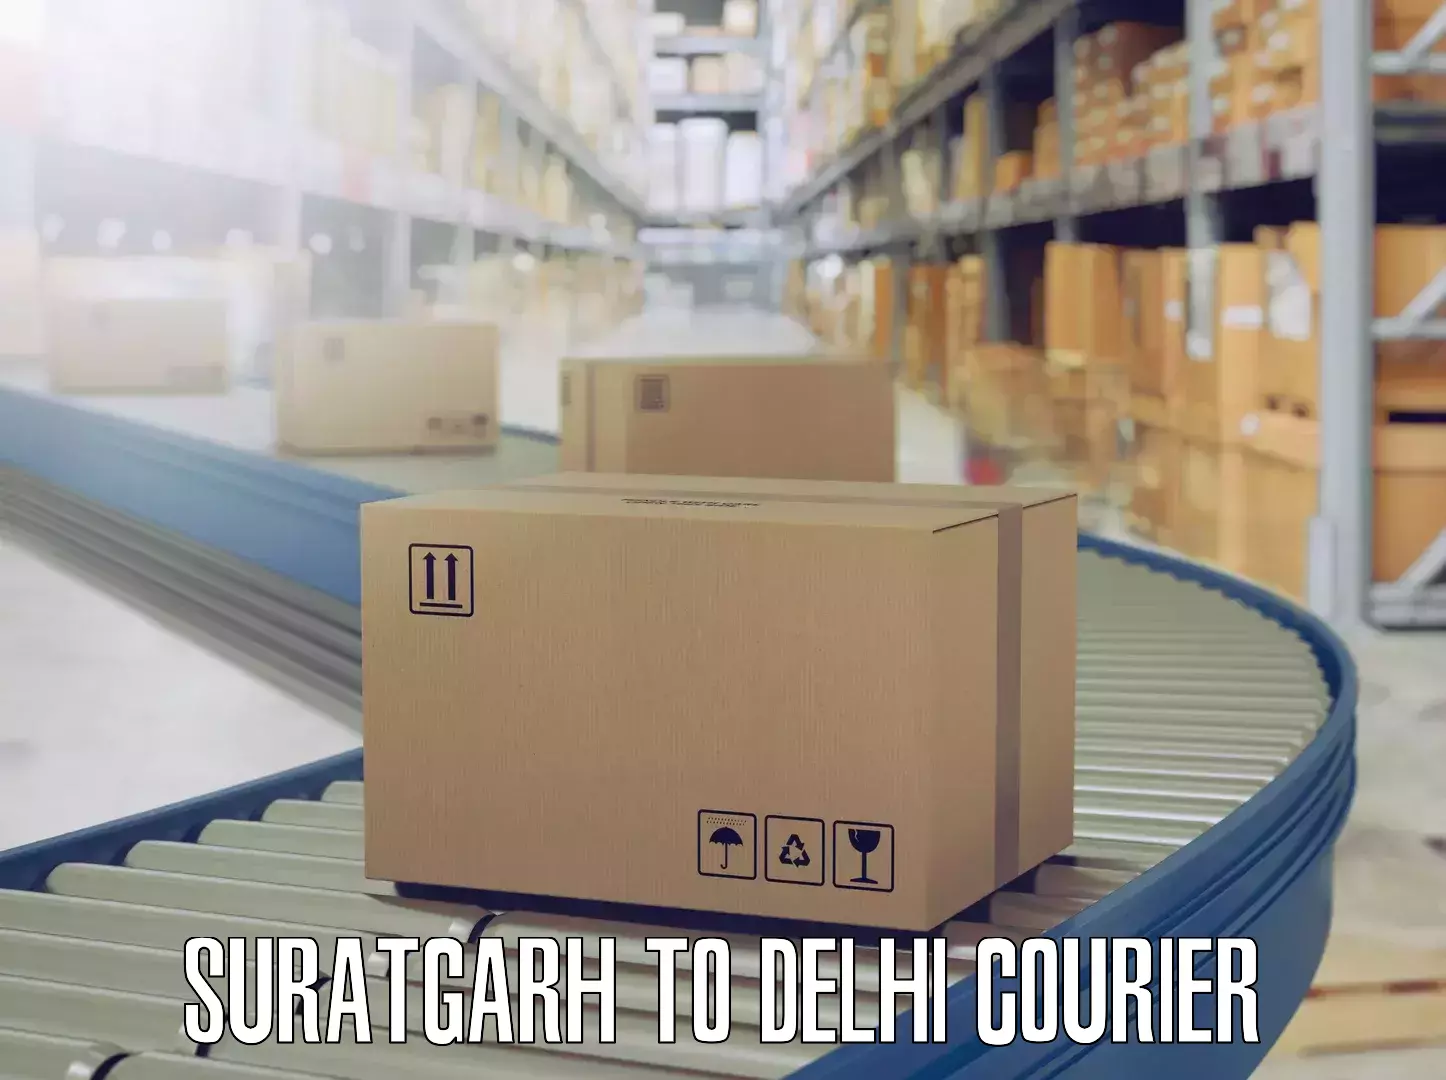 Professional moving company Suratgarh to Delhi